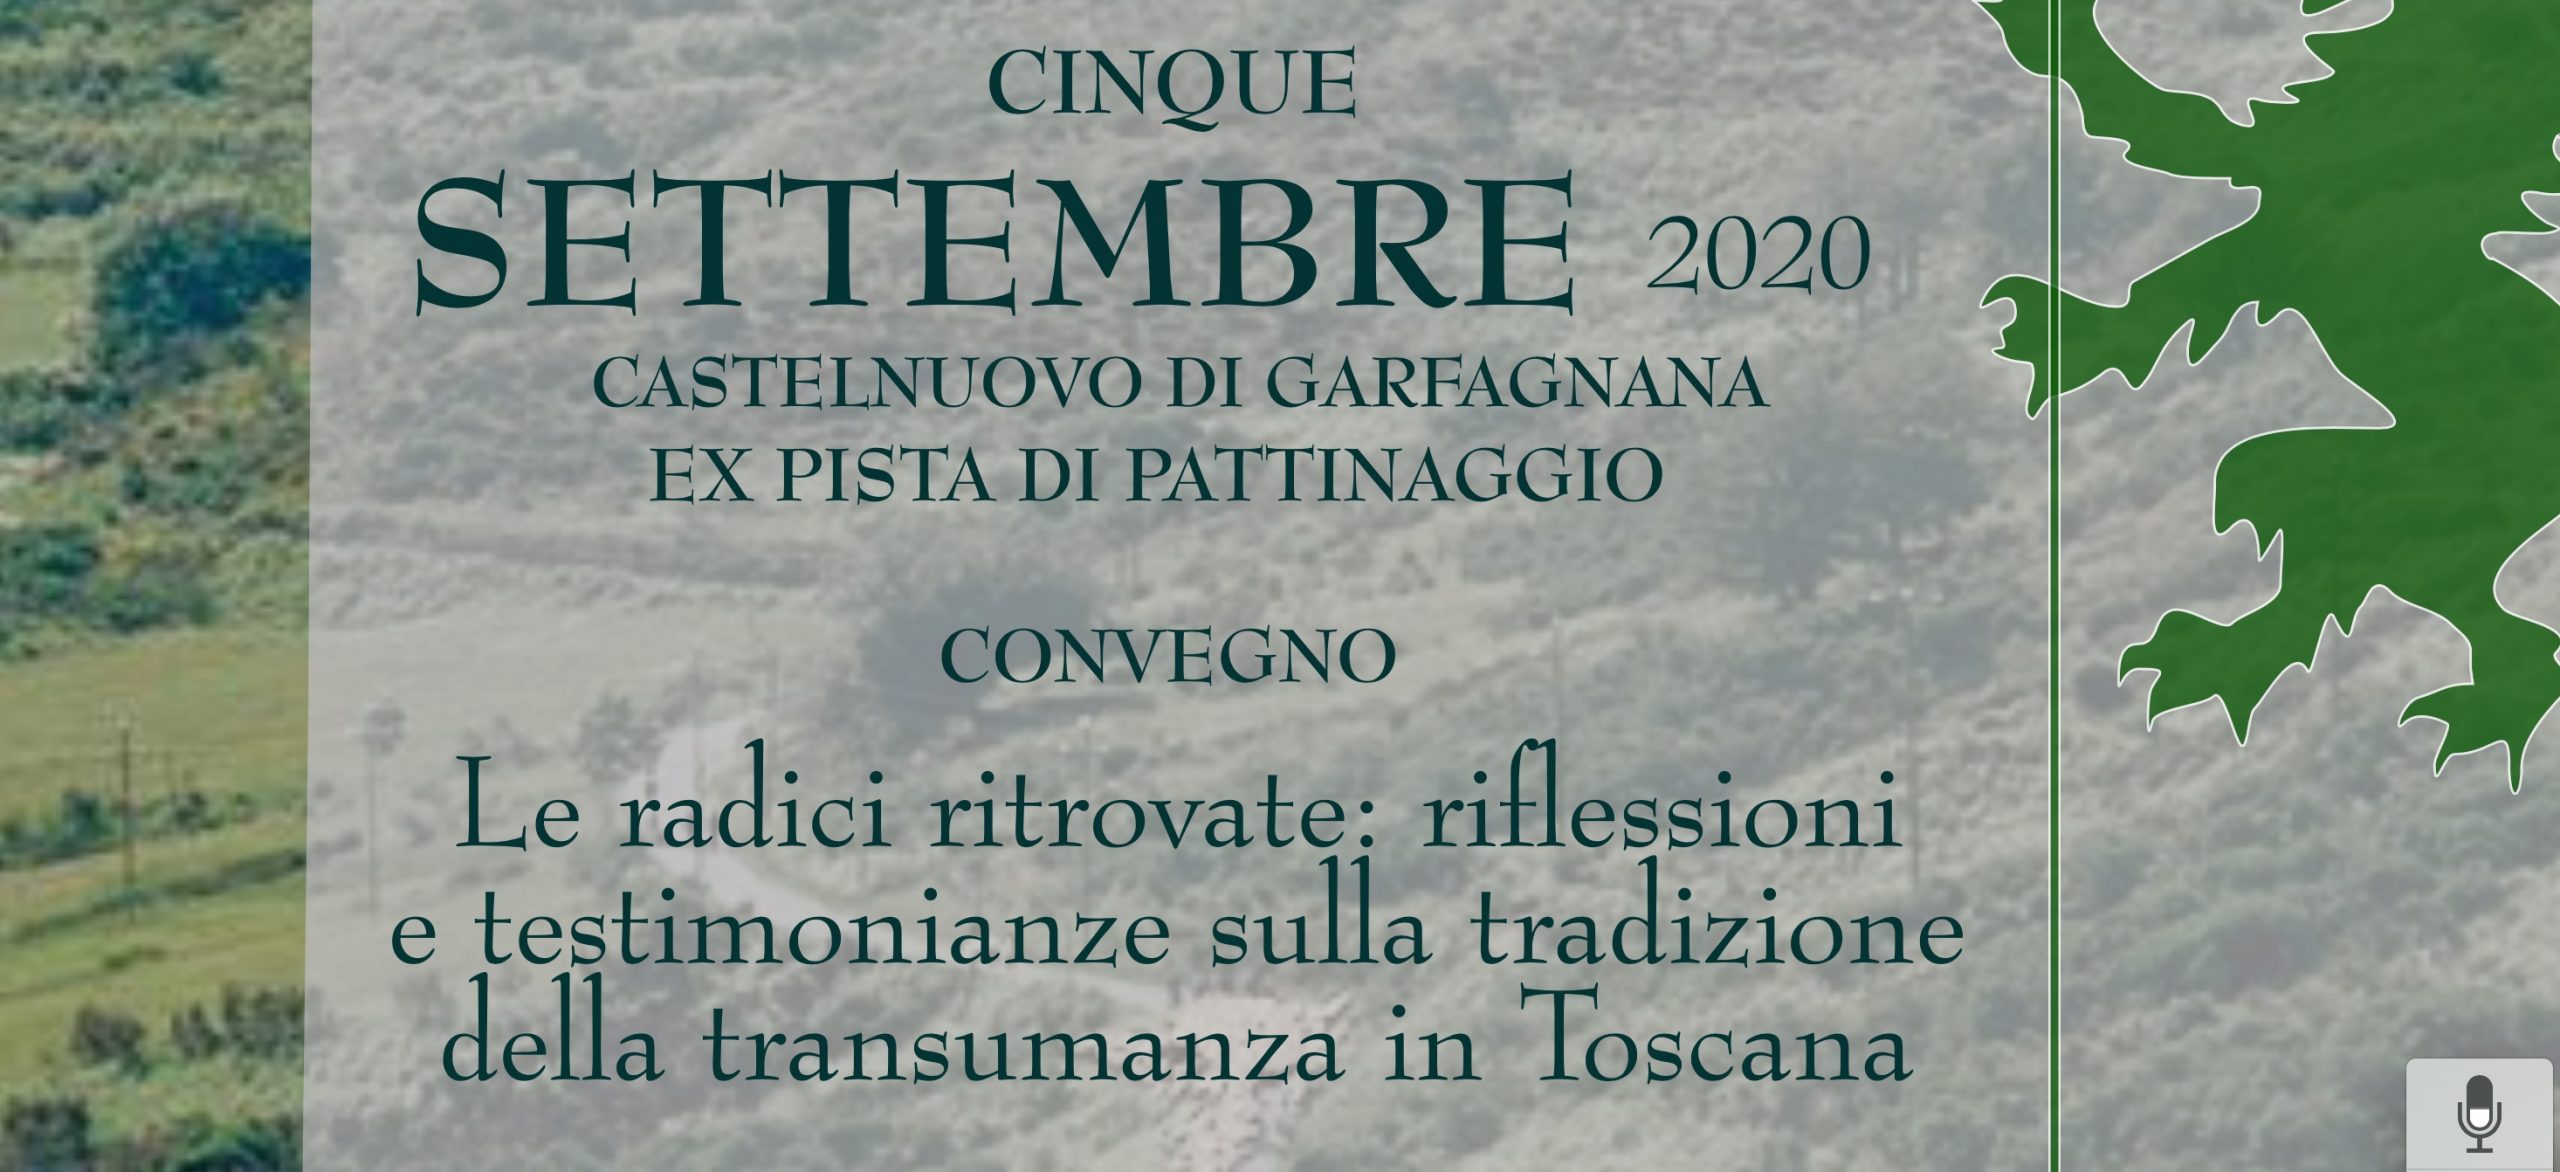 Transumanza: un convegno a Castelnuovo Garfagnana, 5 settembre 2020